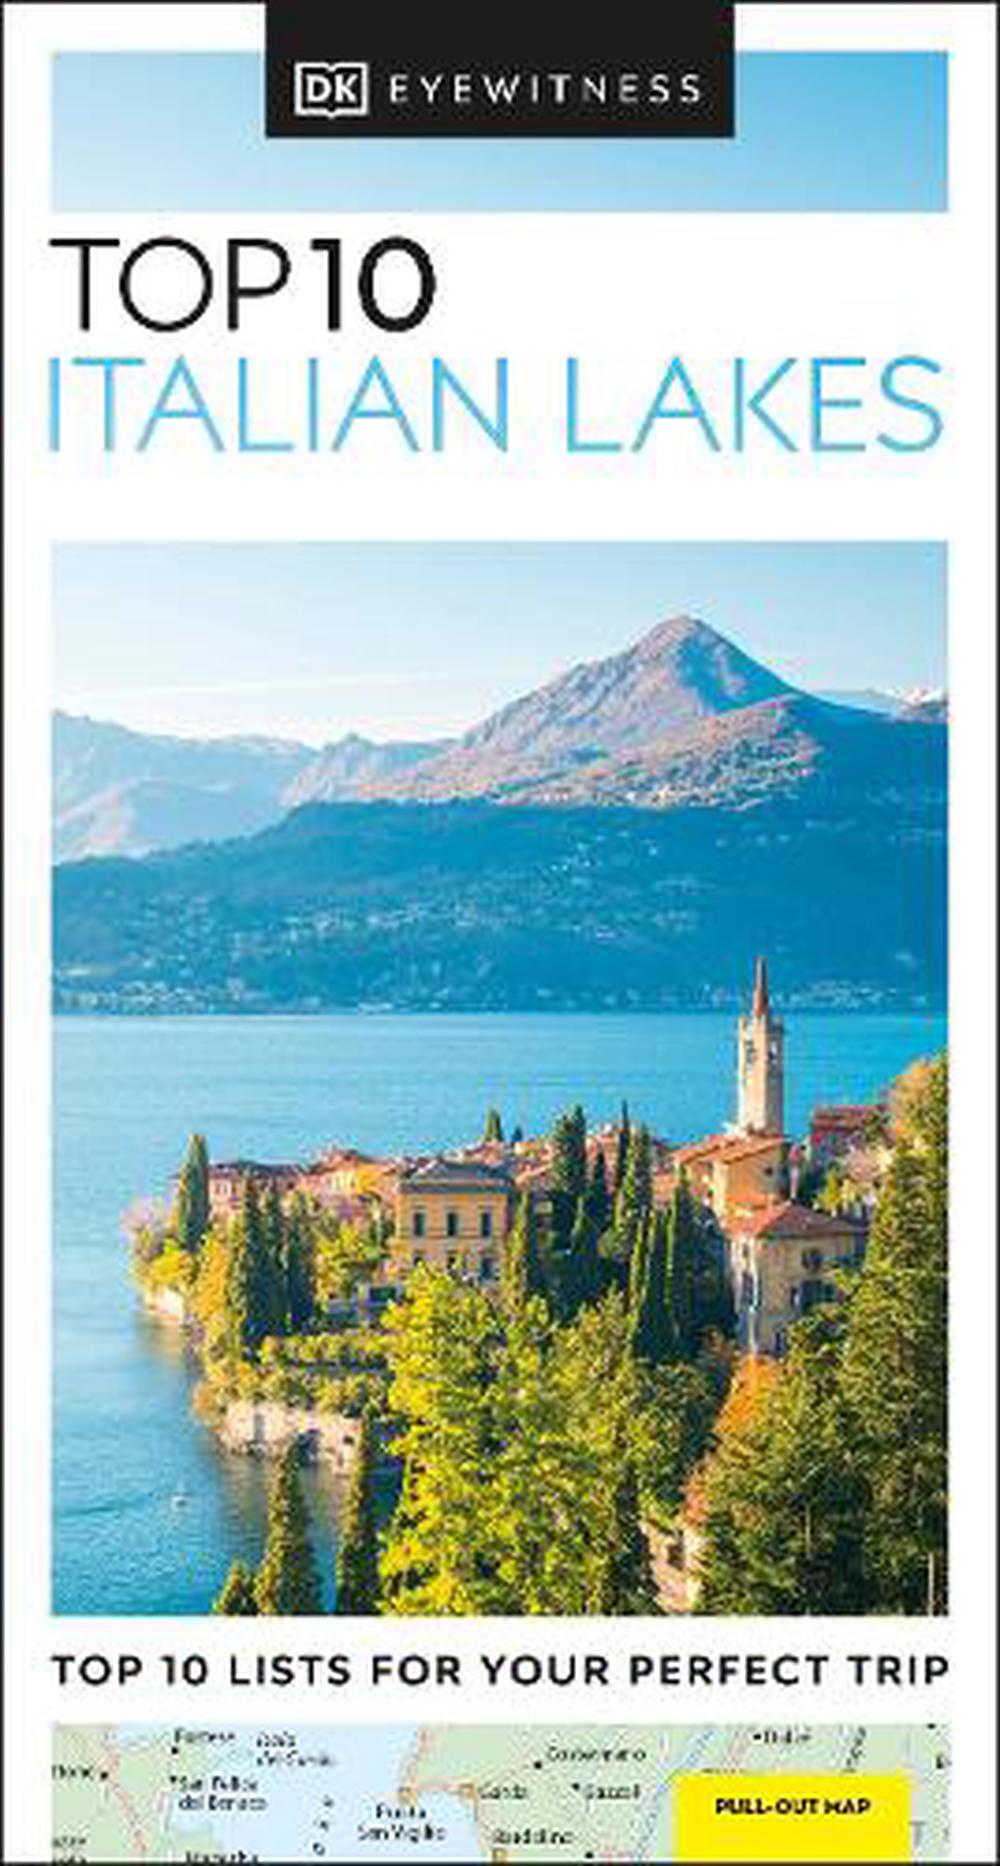 online　DK　Buy　10　Lakes　Eyewitness,　Top　Eyewitness　9780241462898　Paperback,　The　by　DK　at　Italian　Nile